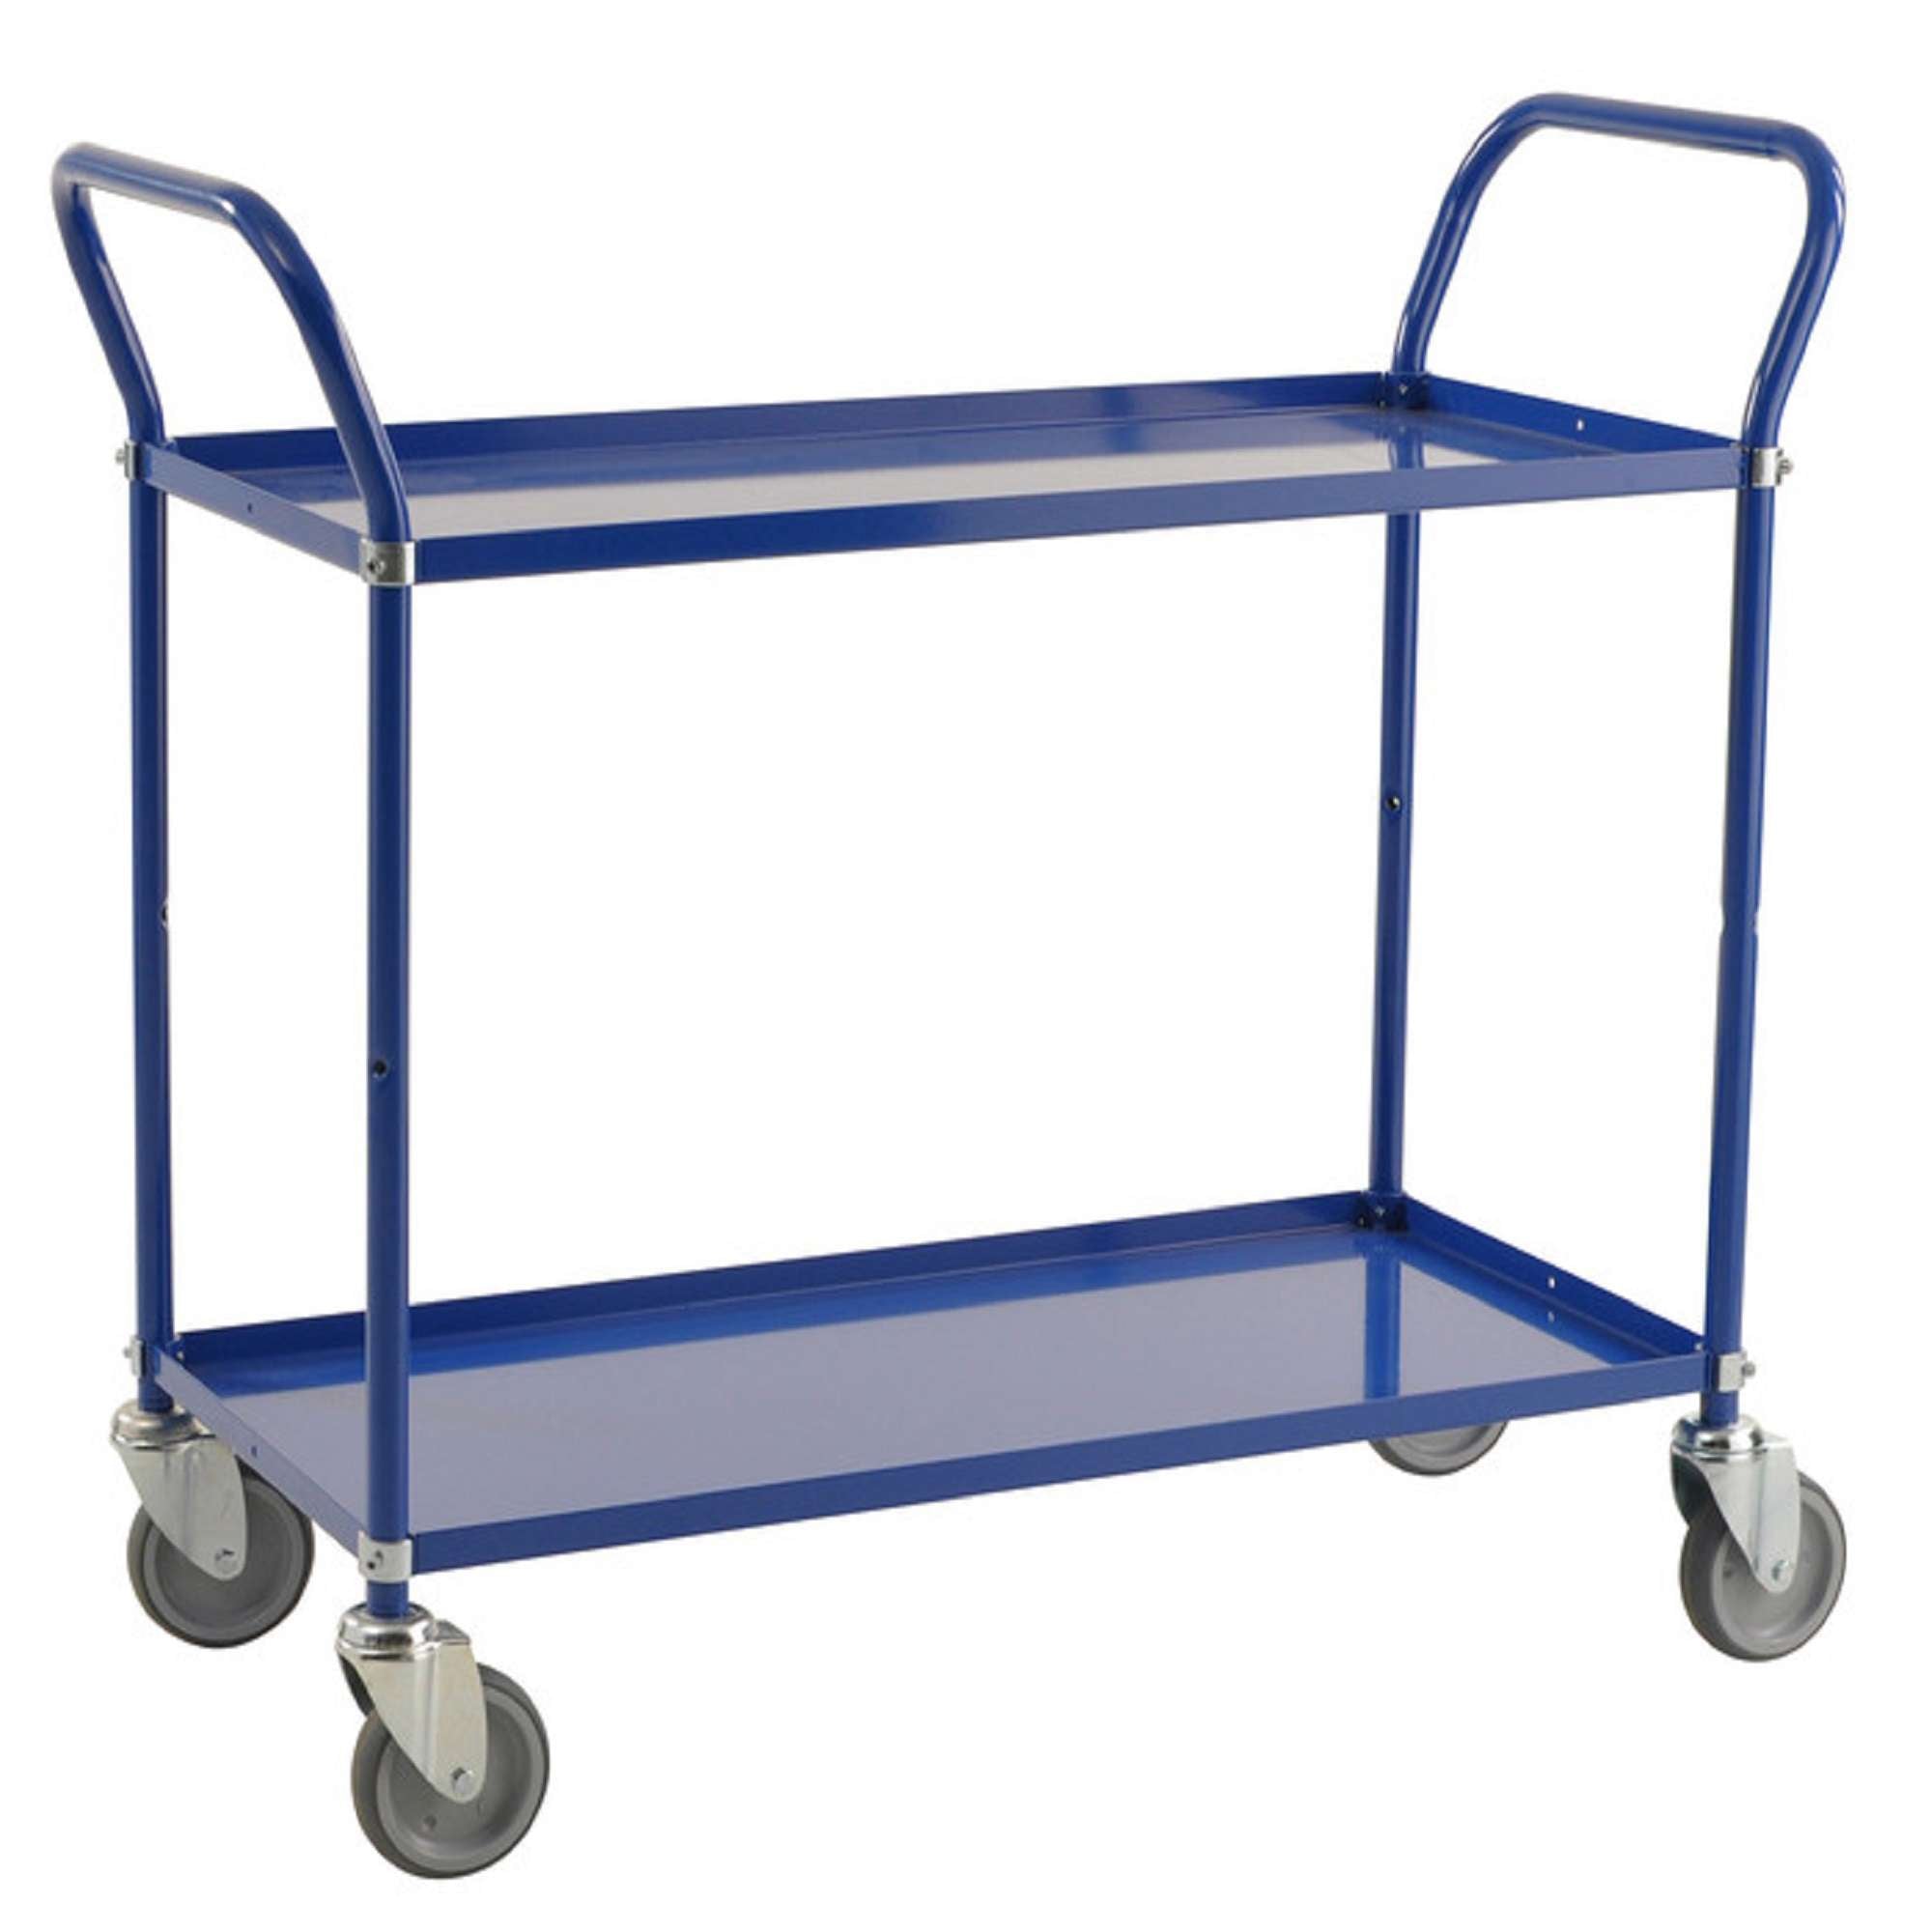 Blue trolley with 2 shelves, 4 swivel castors - Kongamek